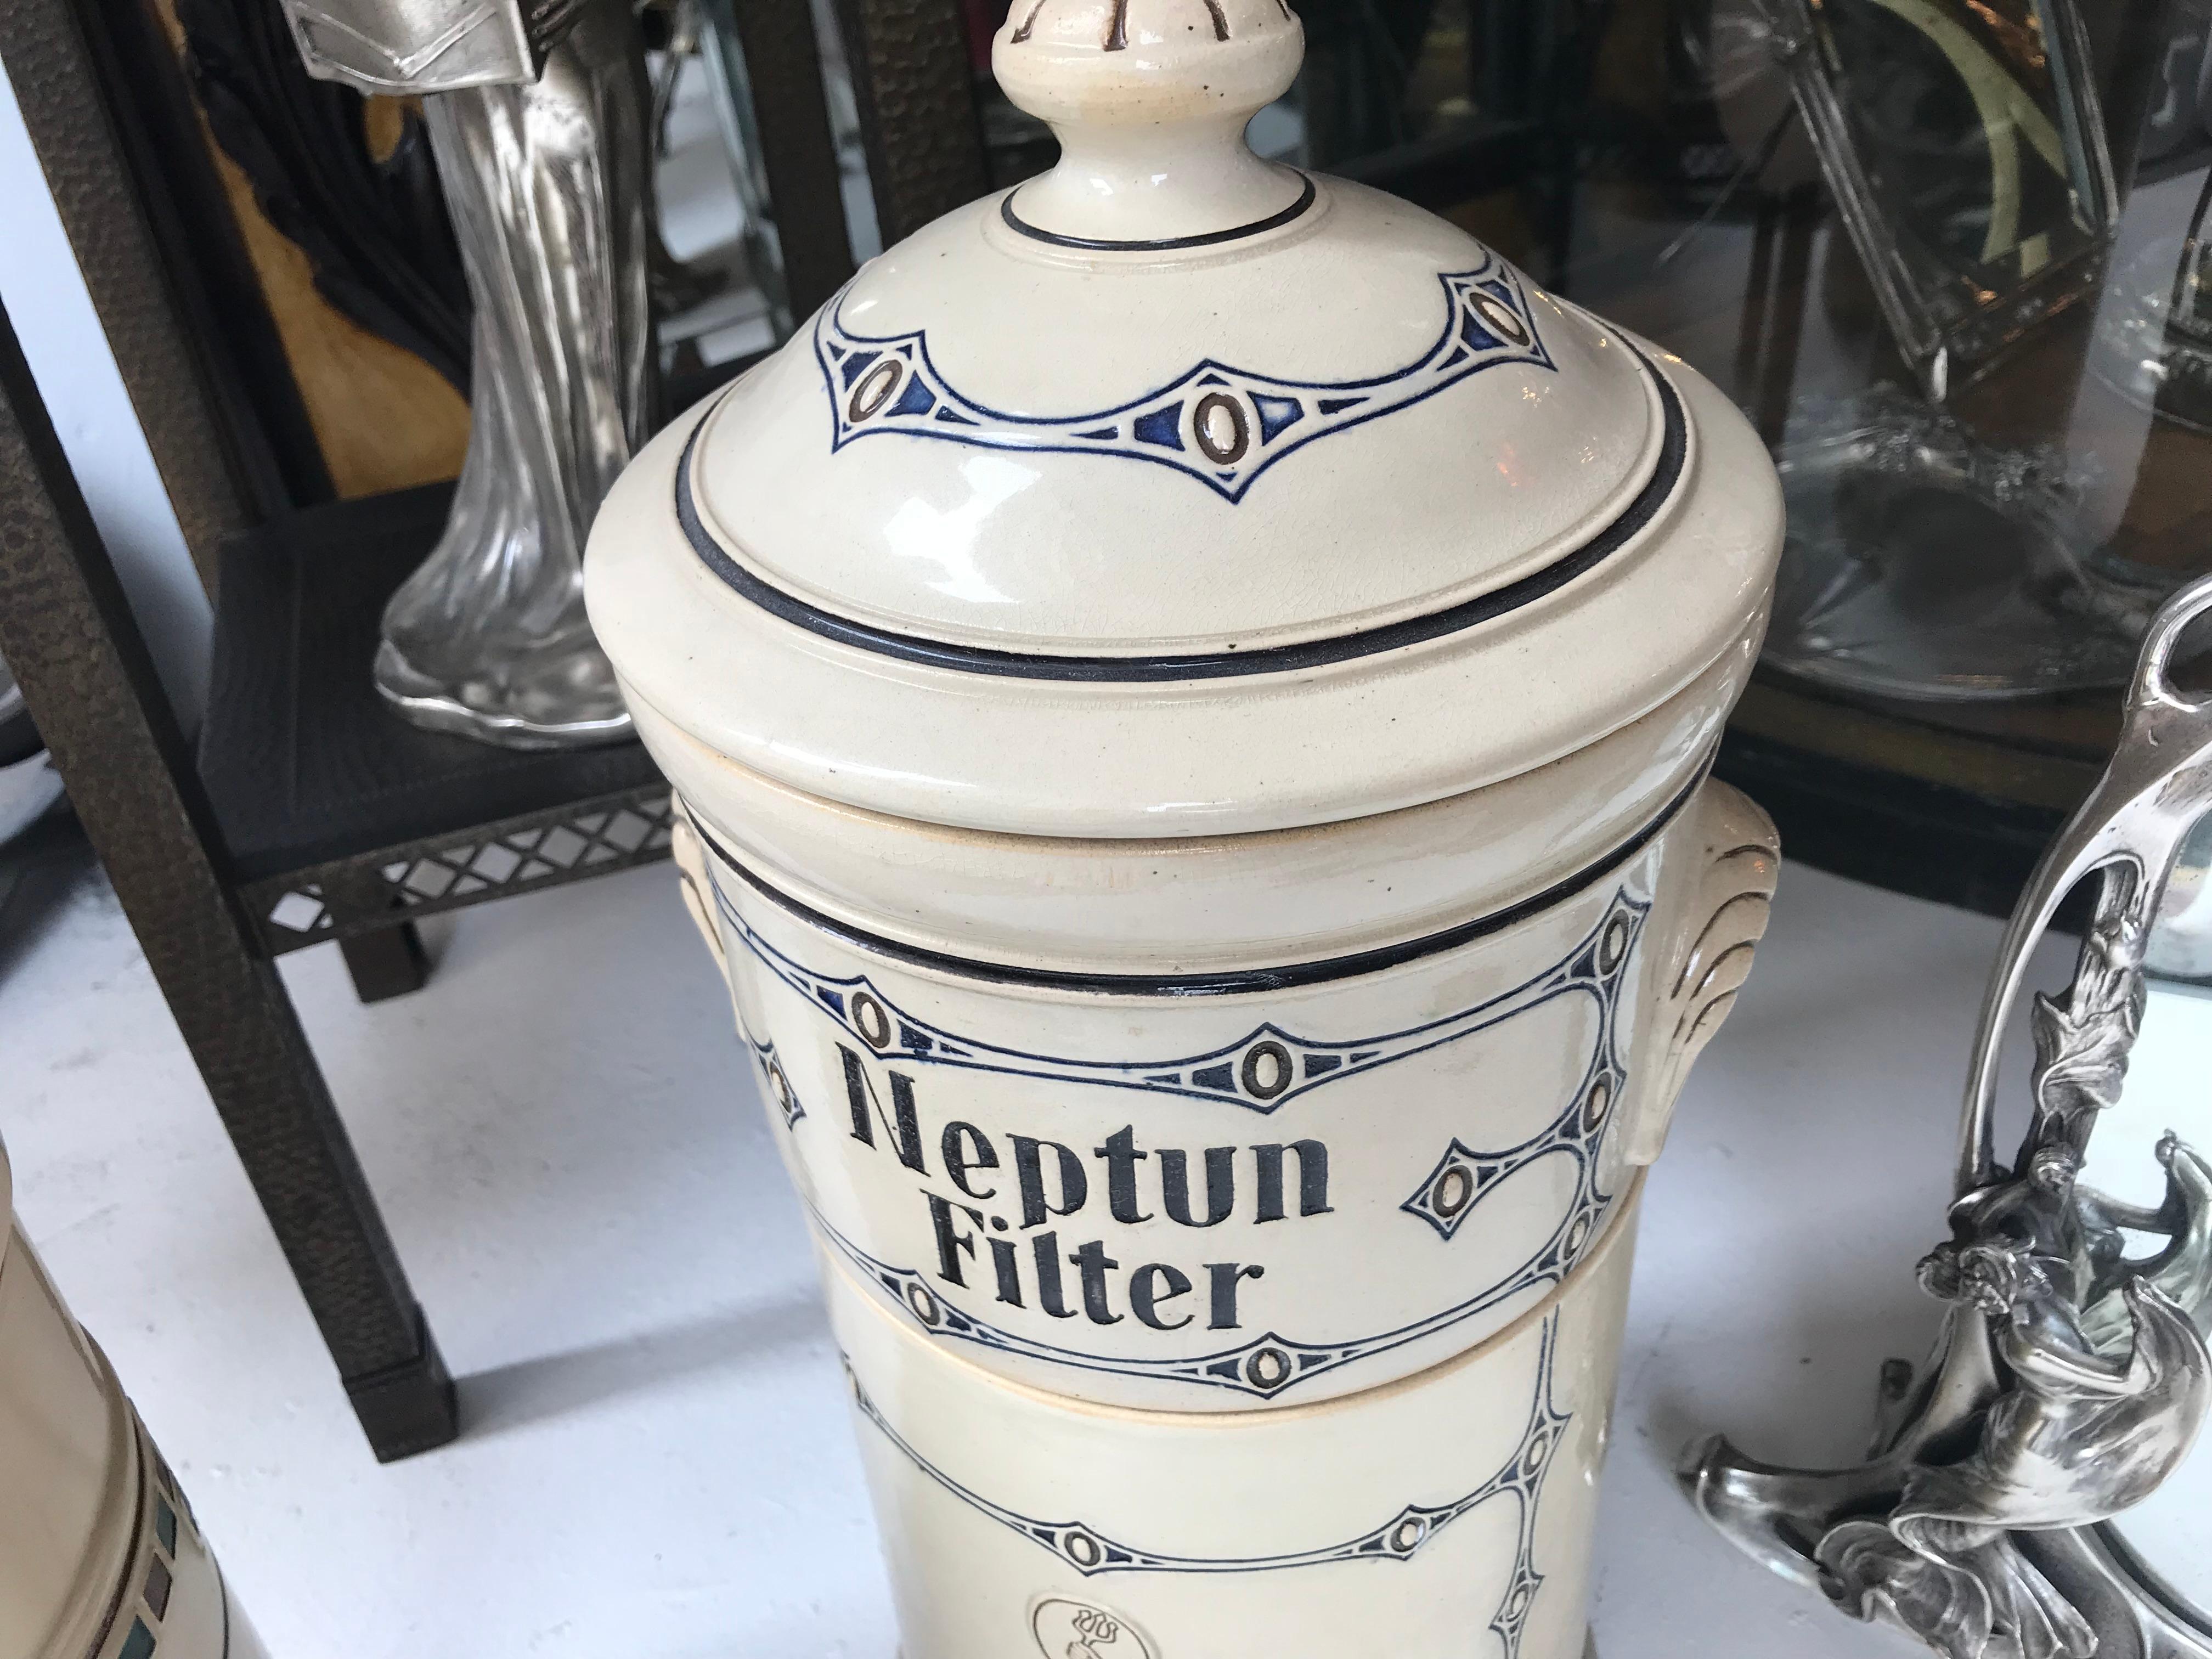 Neptun Filter, Jugendstil, Art Nouveau, Liberty, 1900 For Sale 5